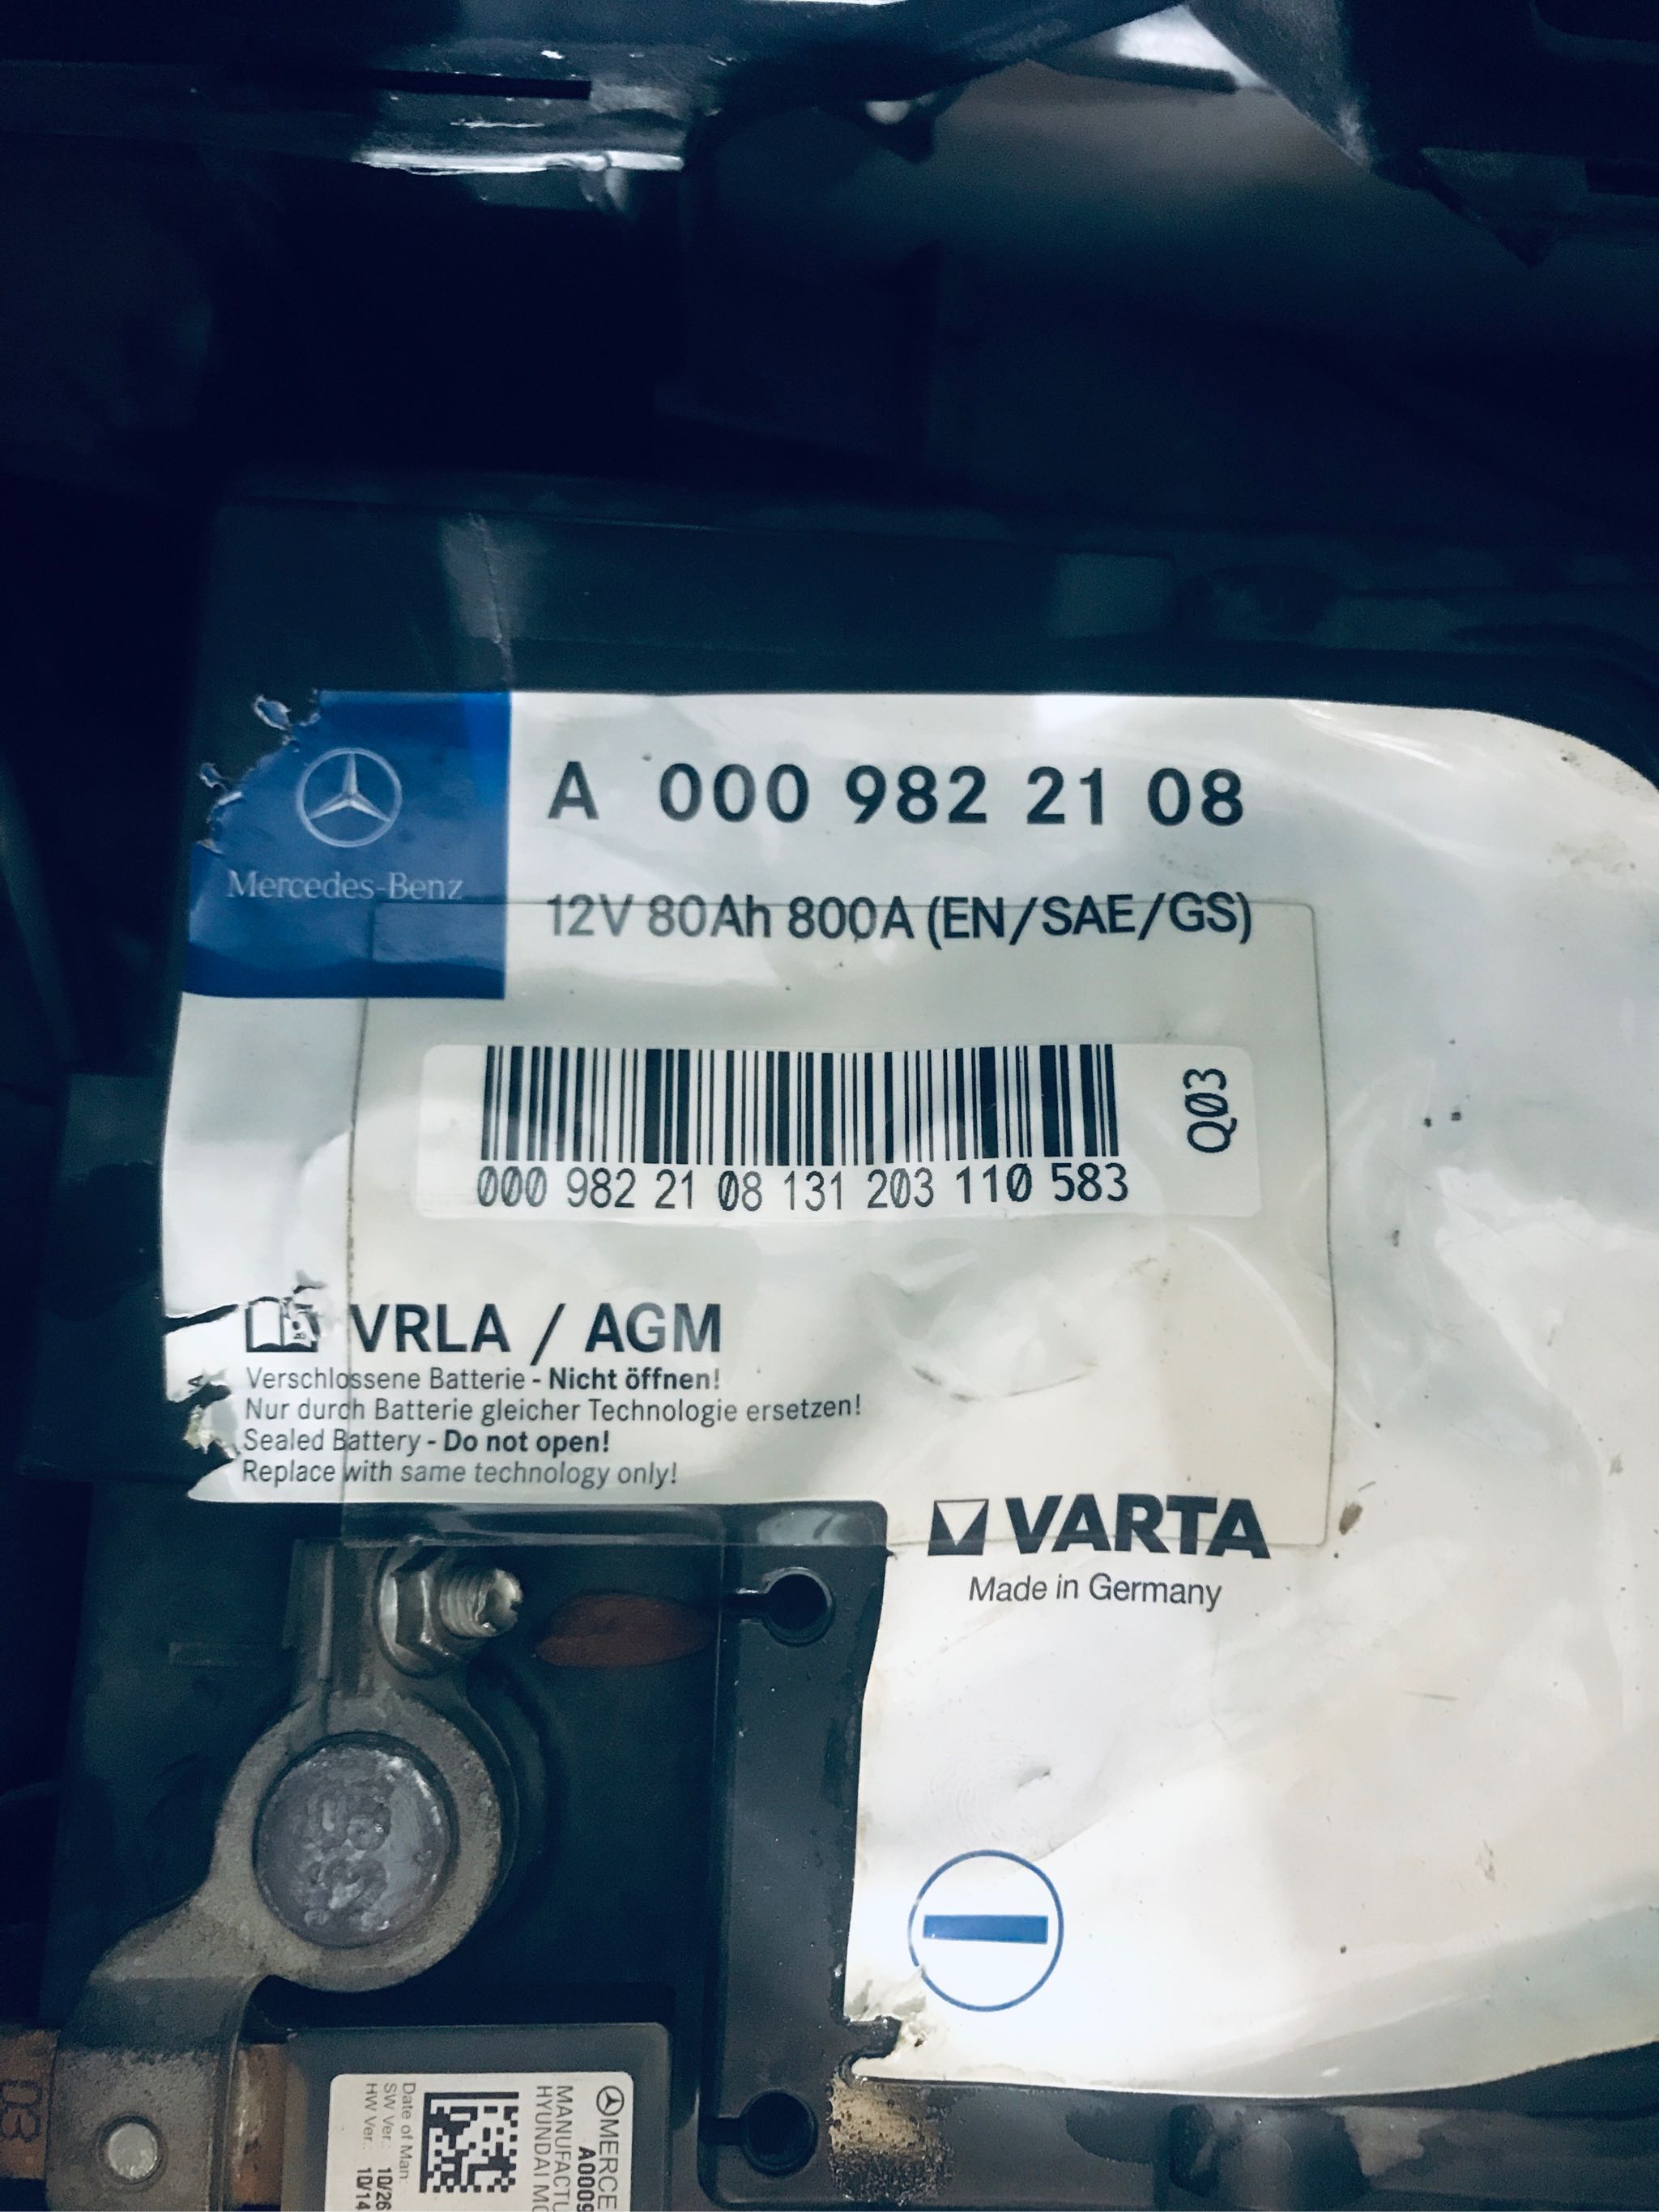 VARTA F21 VRLA AGM REPLACE MERCEDES BENZ A 000 982 21 08 (12V 80AH